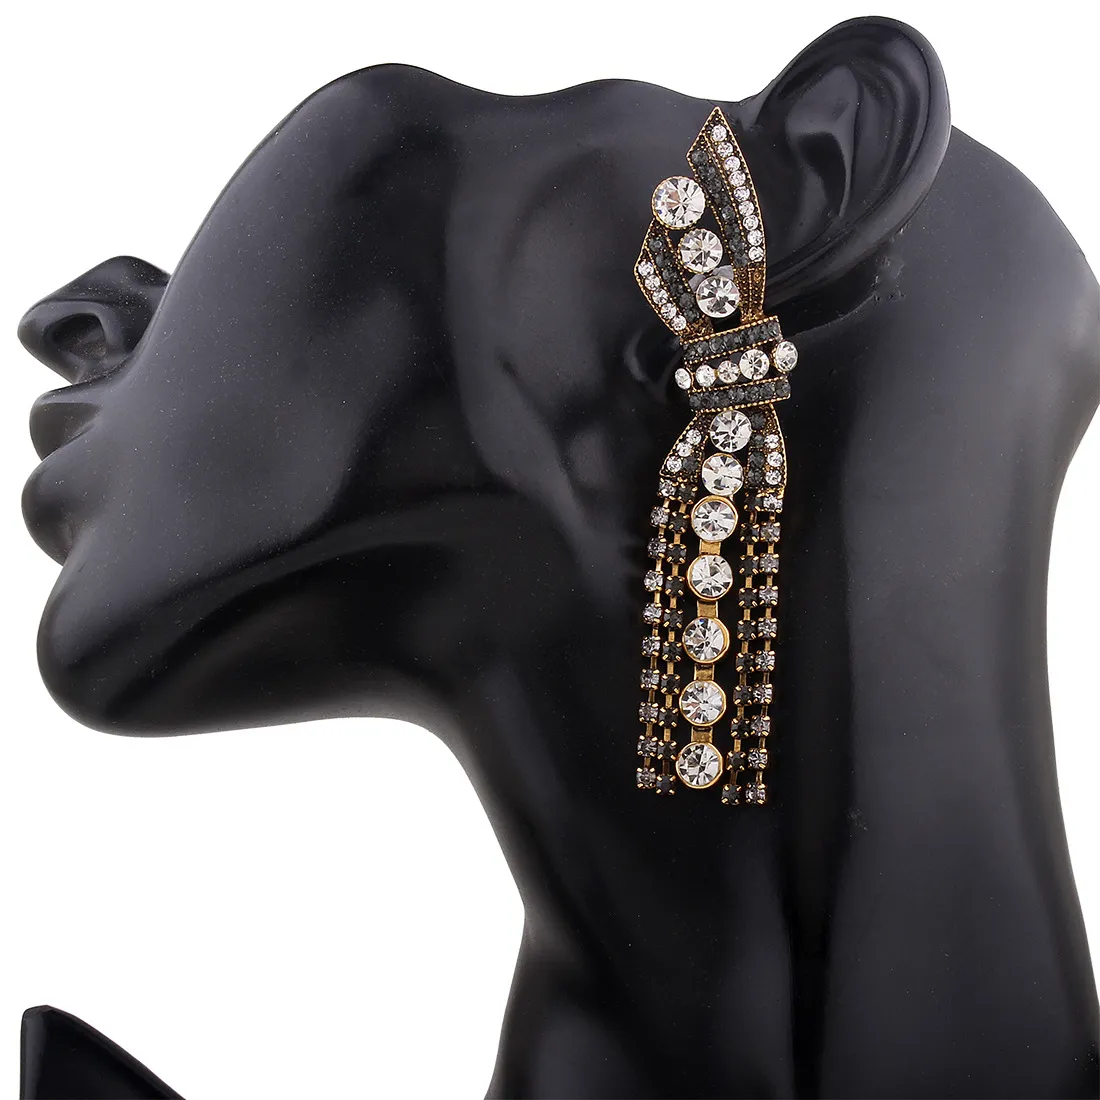 New Brand Claw Crystal statement Stud earrings for women Fashion rock jewelry Rhinestone Tassel earrings pendant Vintage Brincos Bijoux